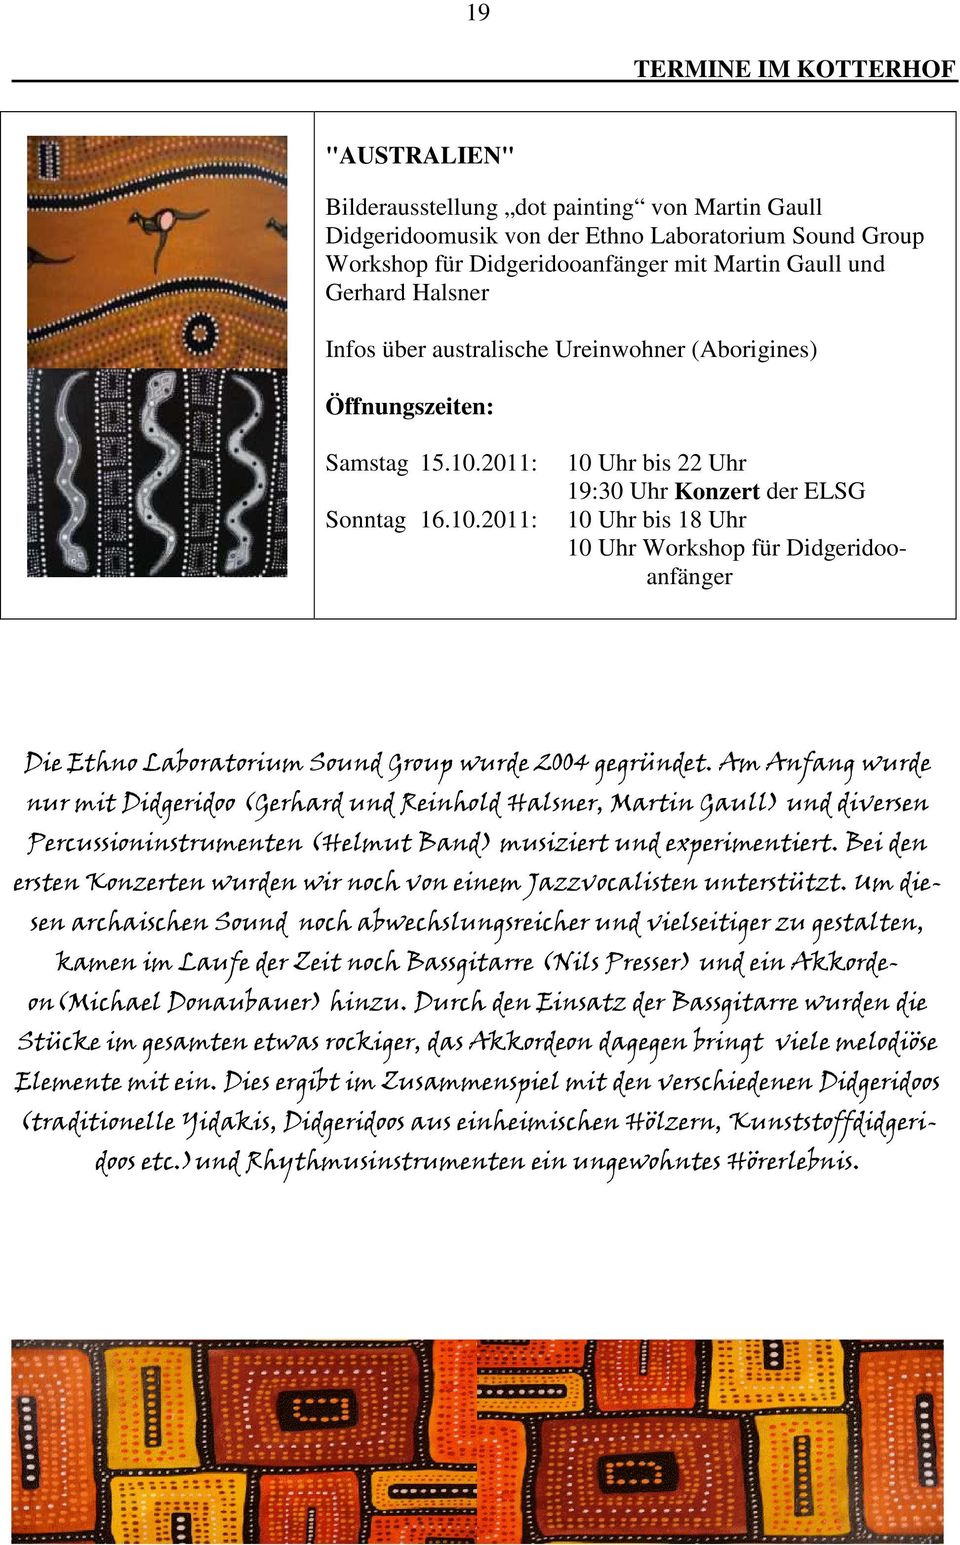 2011: Sonntag 16.10.2011: 10 Uhr bis 22 Uhr 19:30 Uhr Konzert der ELSG 10 Uhr bis 18 Uhr 10 Uhr Workshop für Didgeridooanfänger Die Ethno Laboratorium Sound Group wurde 2004 gegründet.